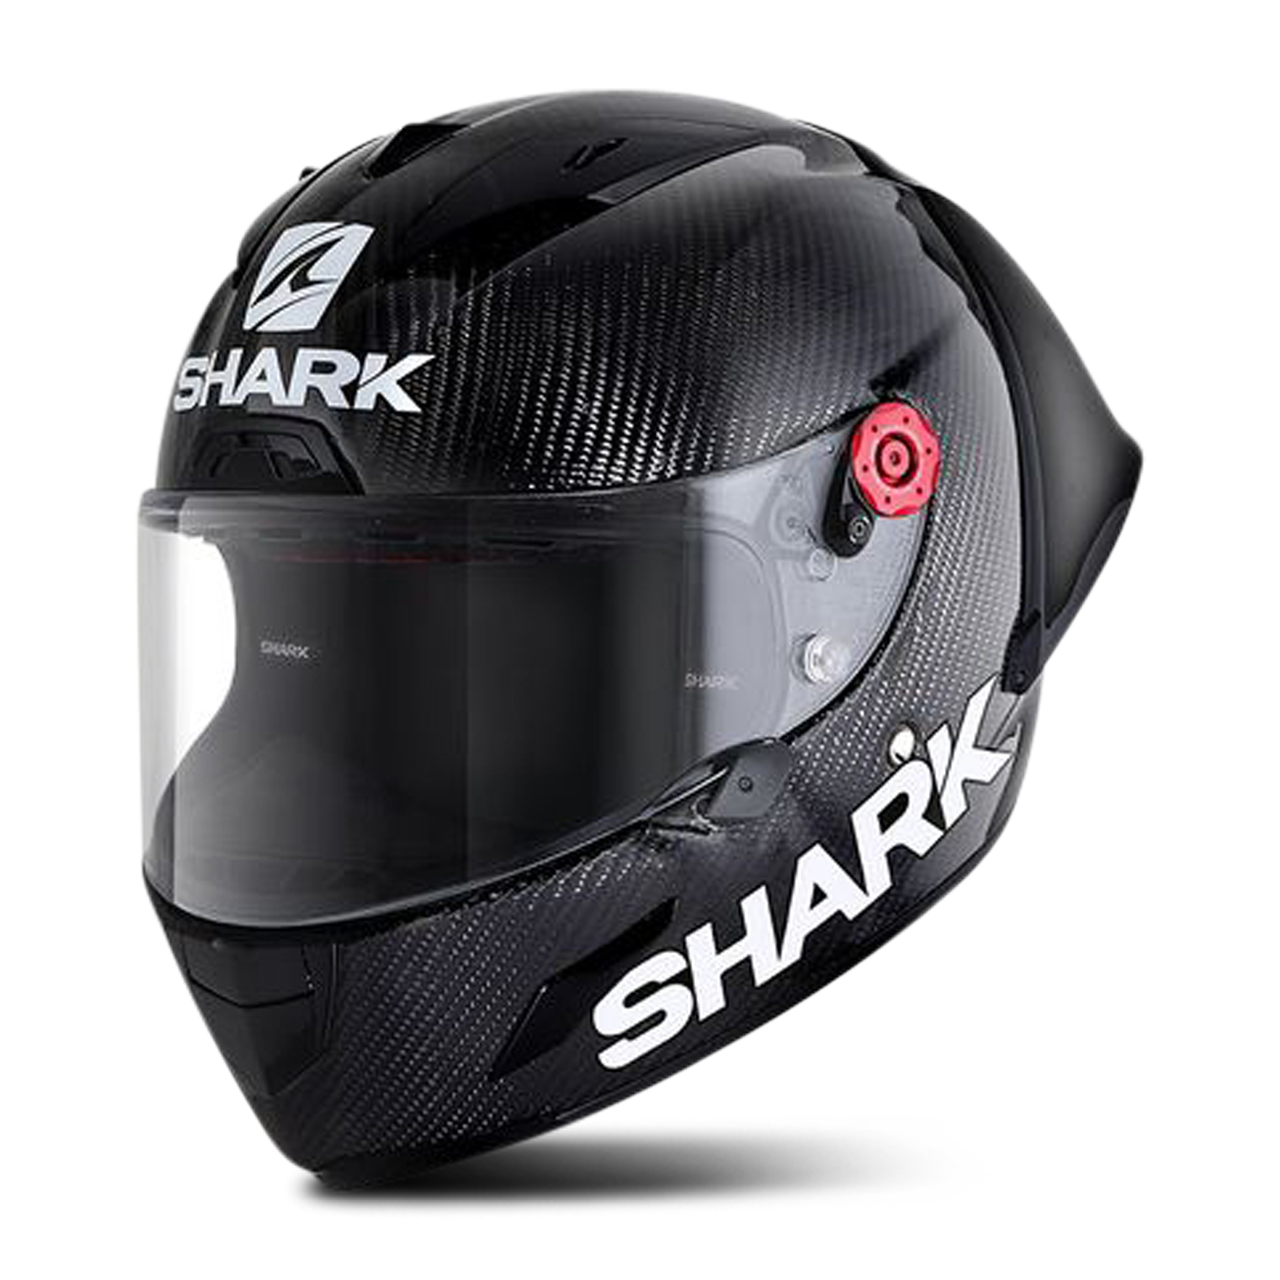 Shark Casque Intégral Shark Race-R Pro GP Fim Racing # 1 2019 Carbone-Noir-Carbone M 57-58cm